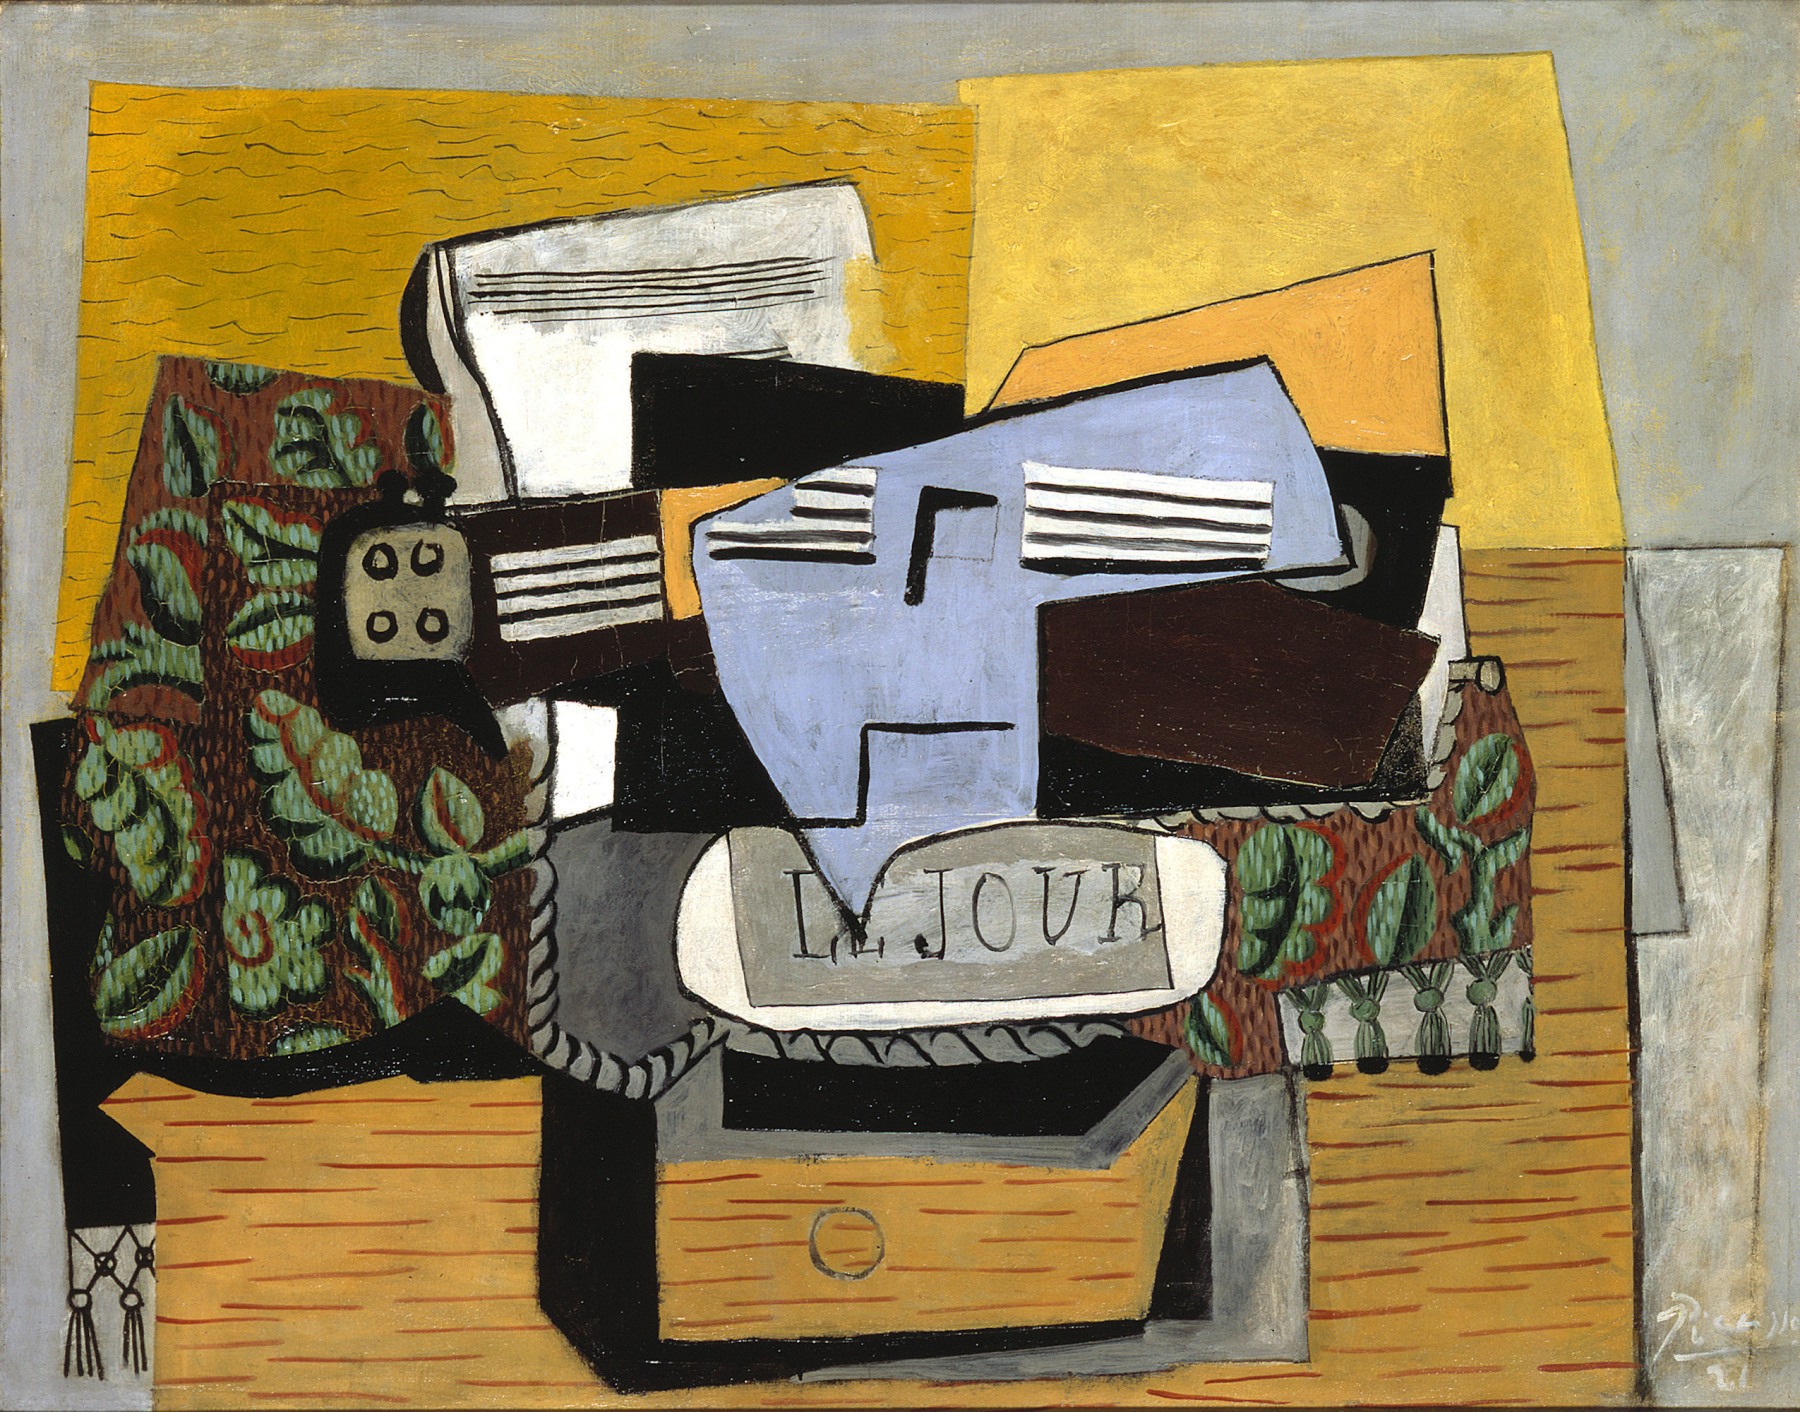 Pablo Picasso, Violon et Journal sur un Tapis Vert, 1922 Oil on canvas 73.3 x 92.1 cm. (28 7/8 x 36 1/4 in.)